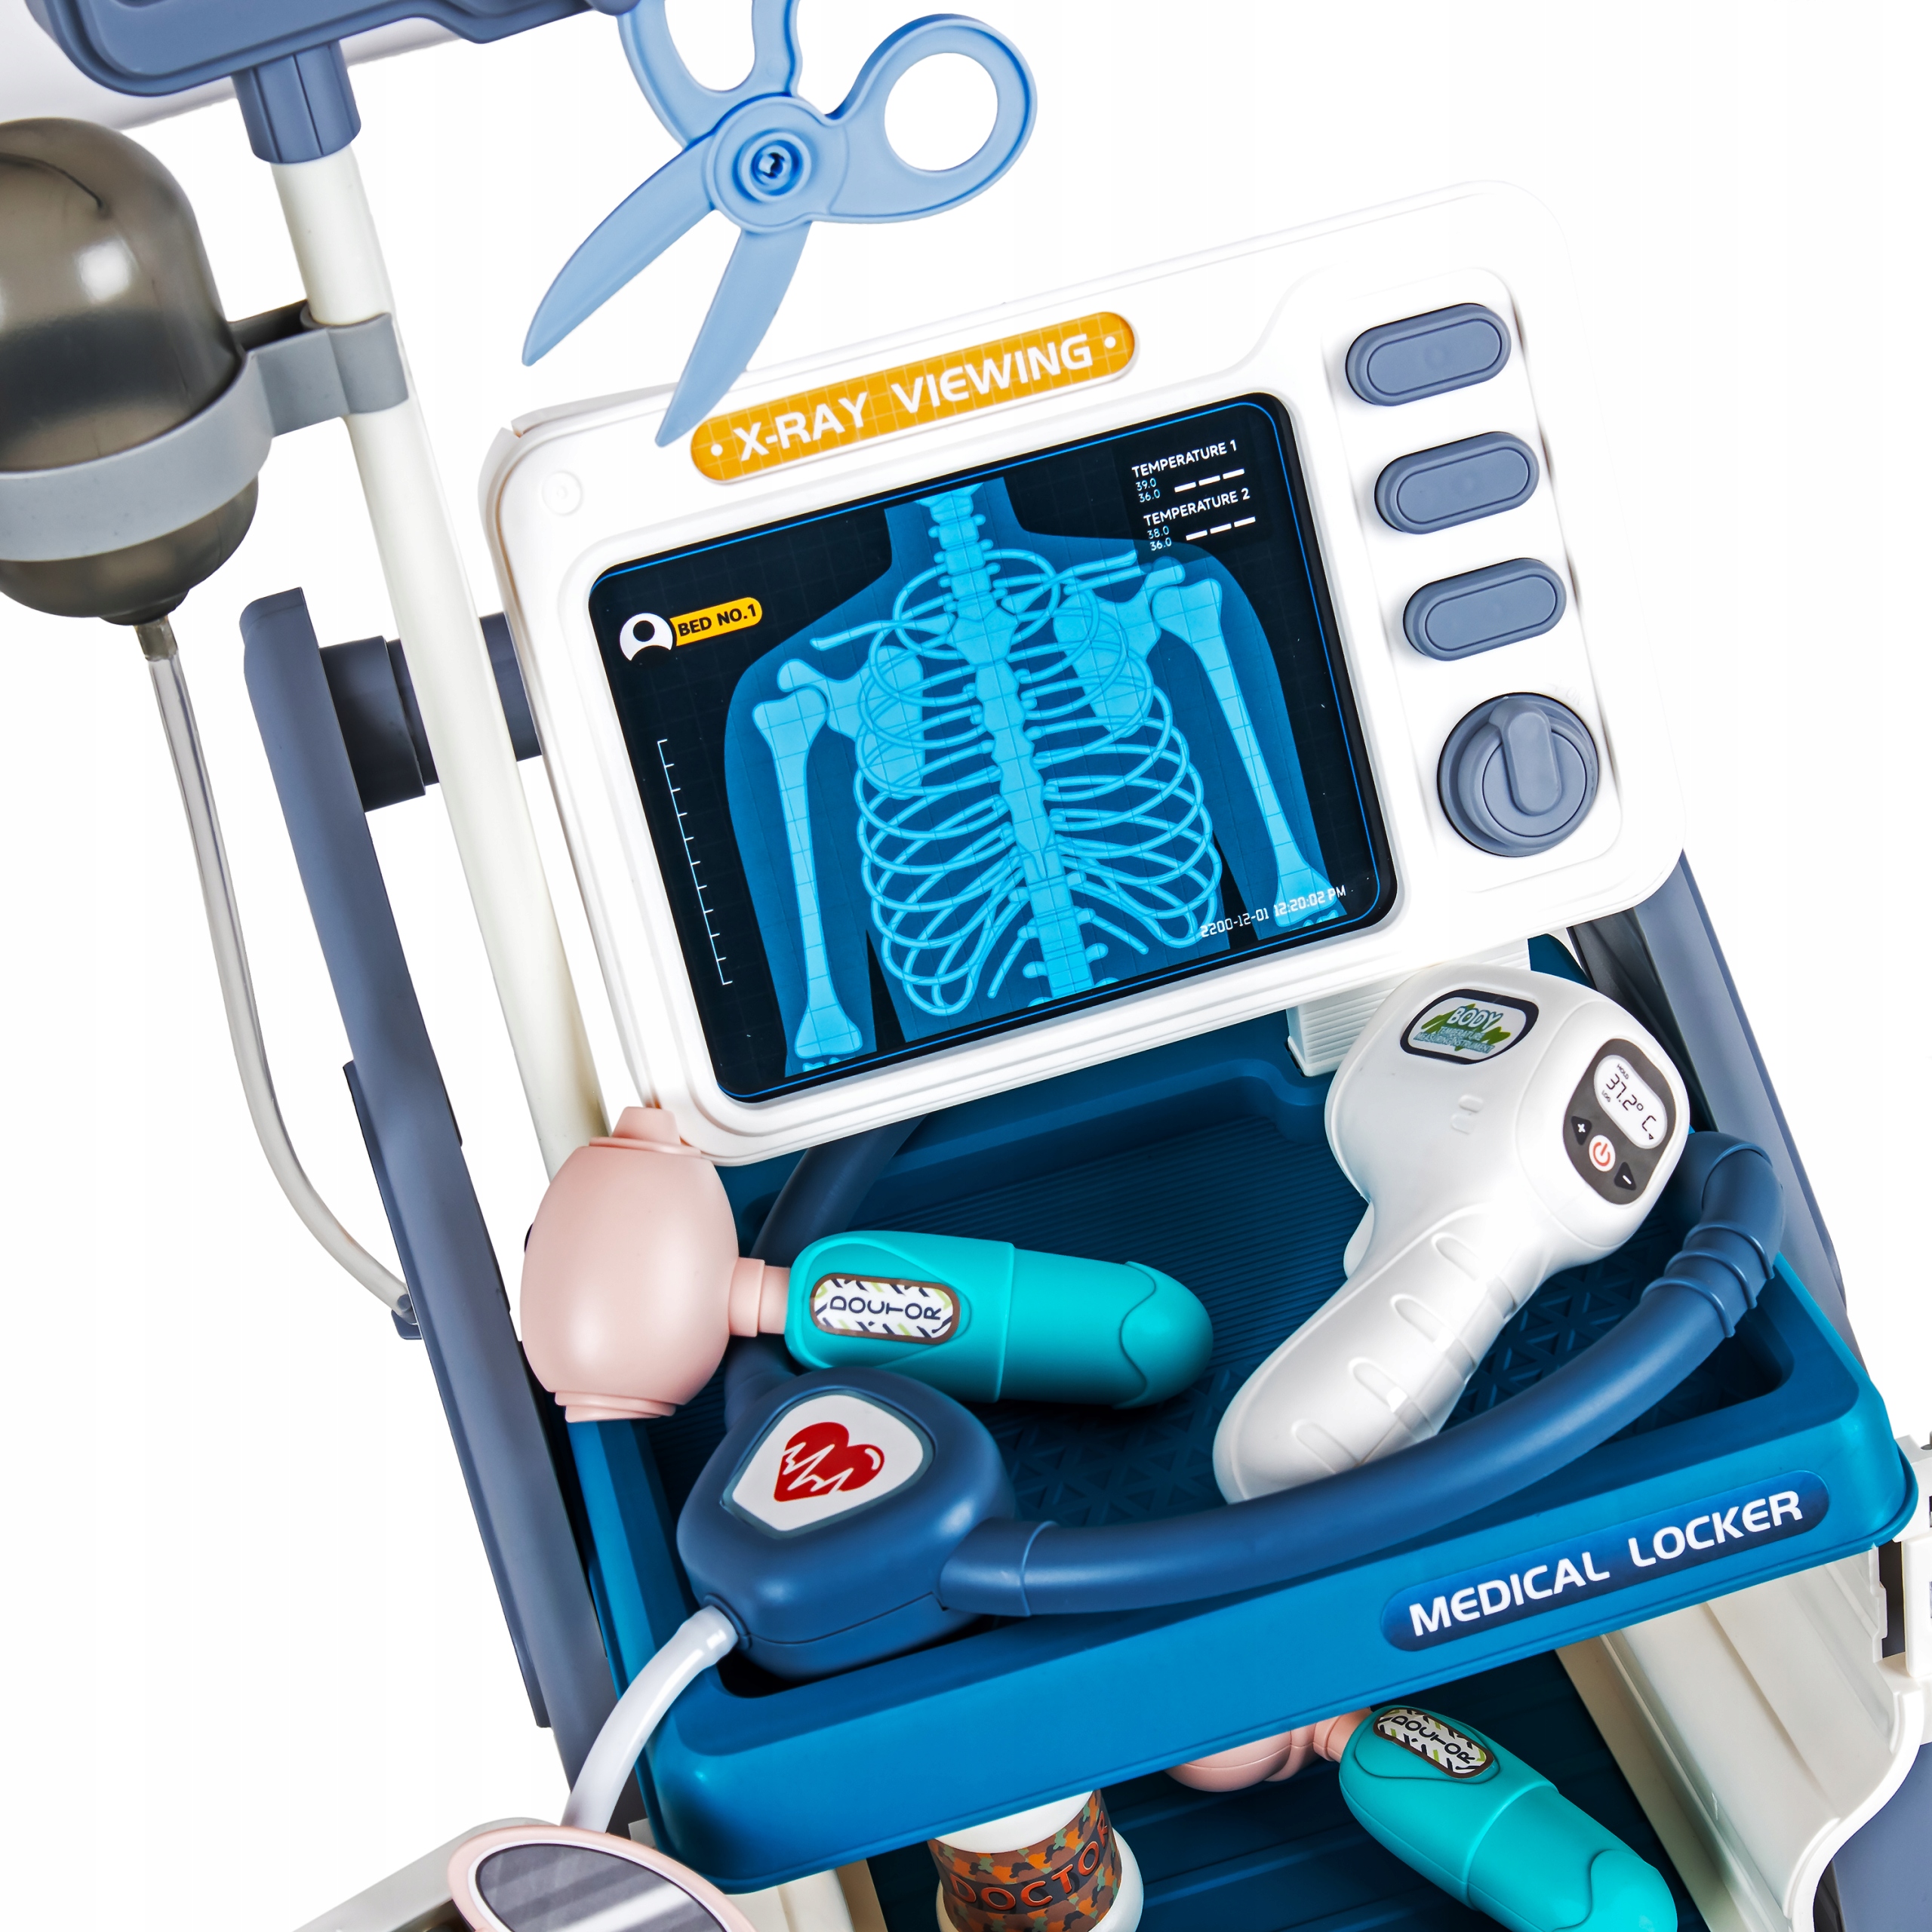 Zabawkowy wózek medyczny Sapphire Kids SK-112